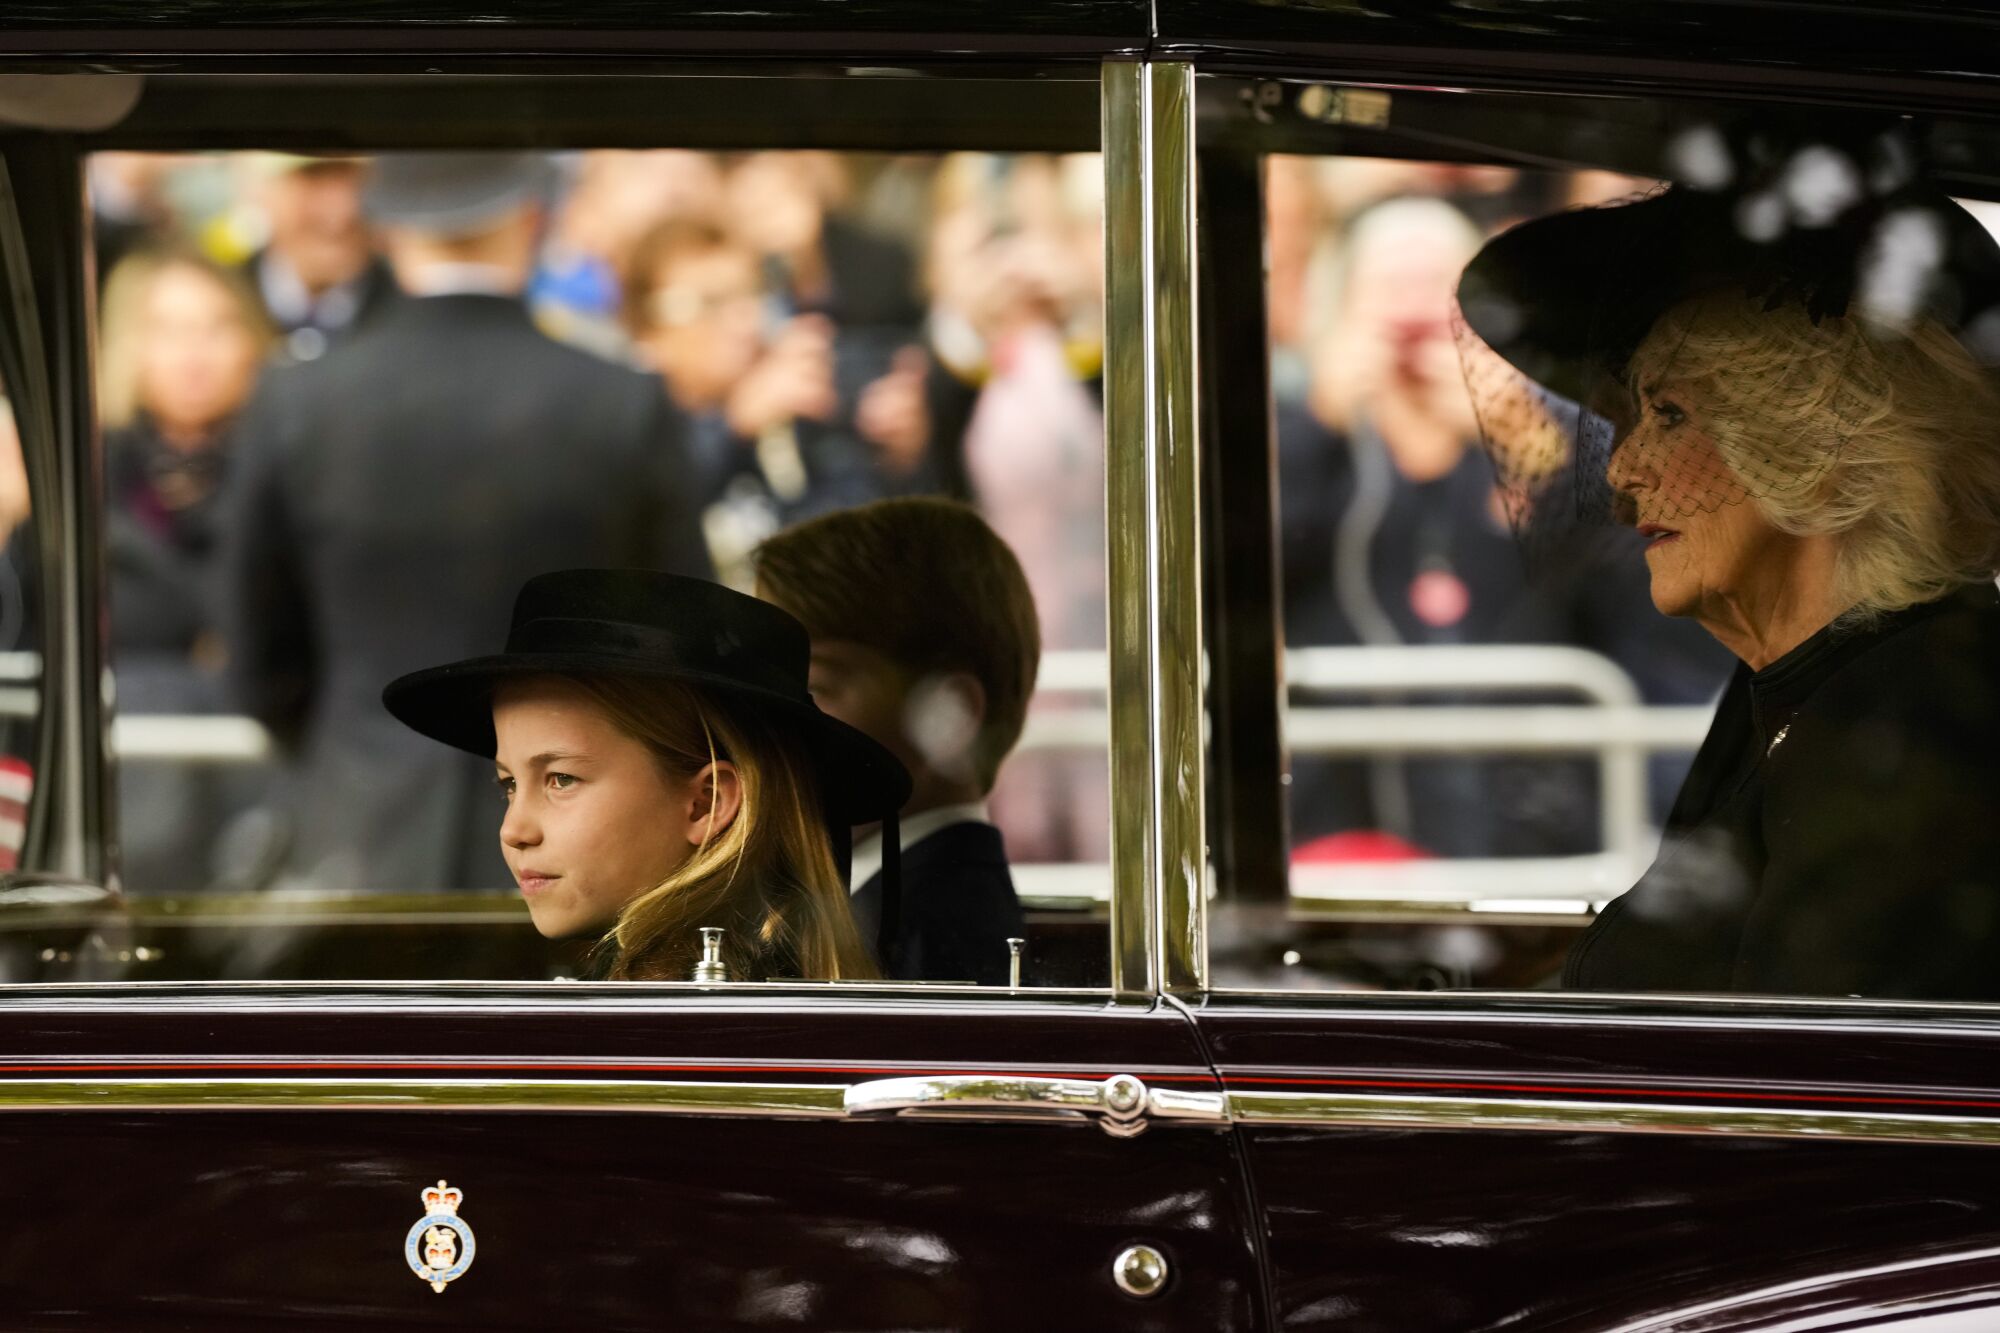   شاهزاده شارلوت و شاهزاده جورج با همسر ملکه، کامیلا، سوار ماشین می شوند.